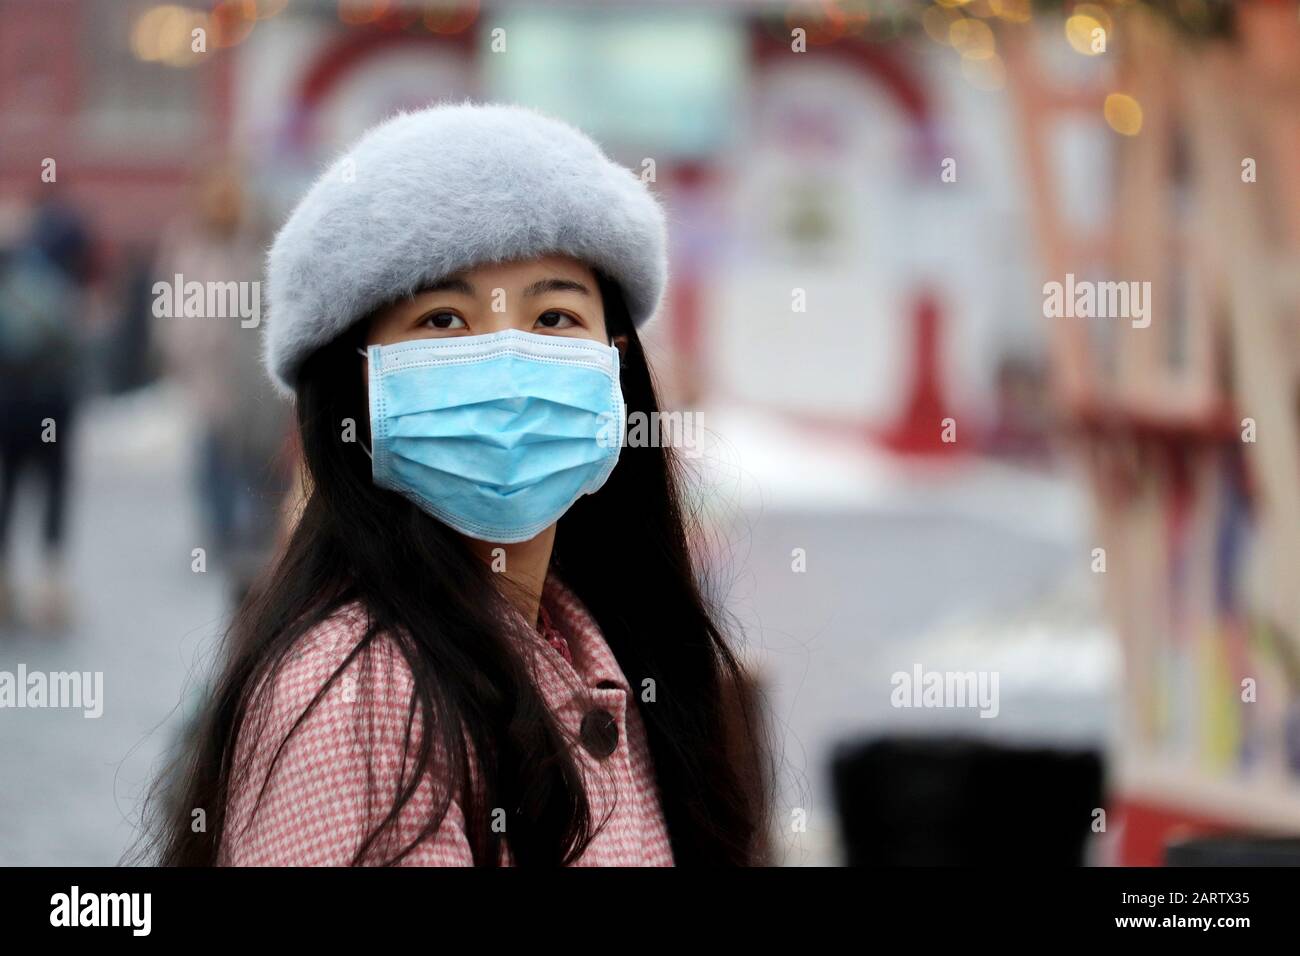 Protezione contro il coronavirus, ragazza cinese in maschera medica protettiva in piedi su una strada invernale della città in folla Foto Stock